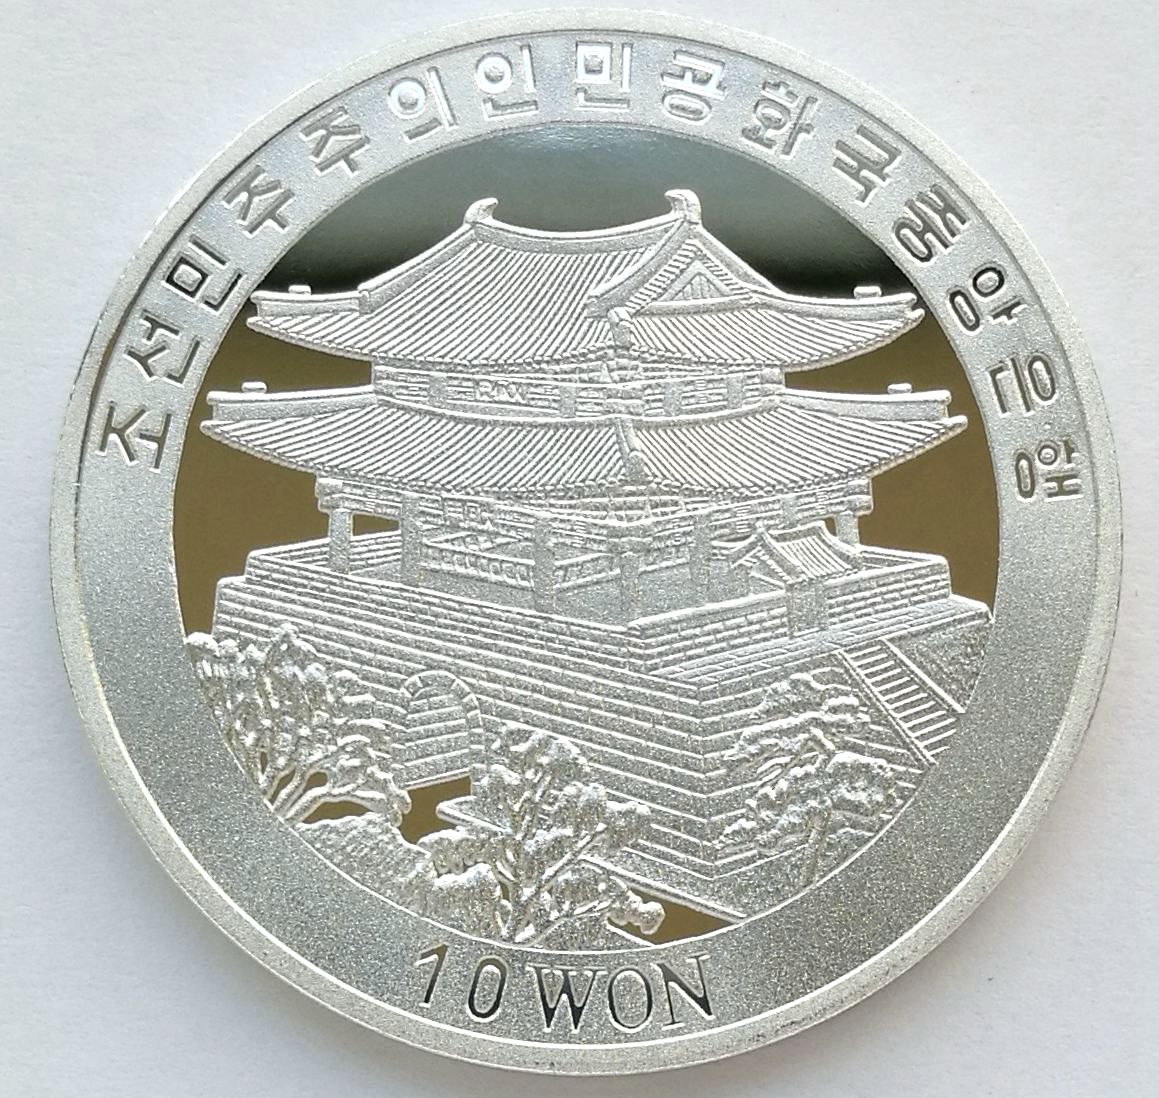 L3186, Korea "Taekwondo" 2004 Olympics Games, Alu Coin 10 Won. 2002 - Click Image to Close